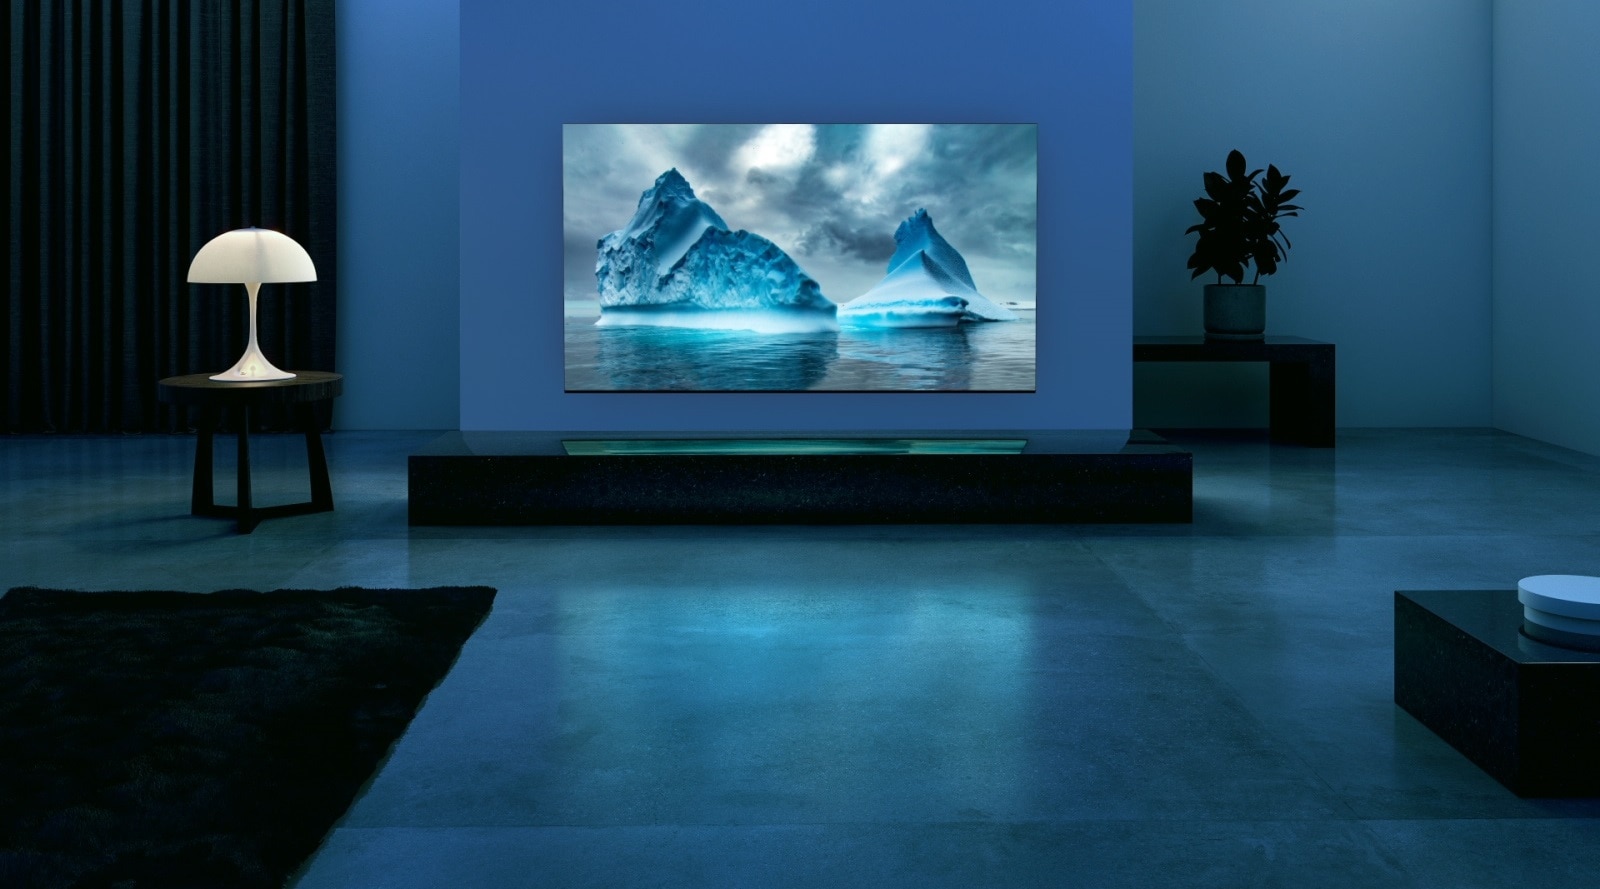 Een blauw neon circuit beweegt rond op blauw gletsjerbeeld. De camera zoomt uit en toont deze blauwe gletsjer op het TV-scherm. De tv is geplaatst in een brede woonkamer met een blauwe achtergrond. 